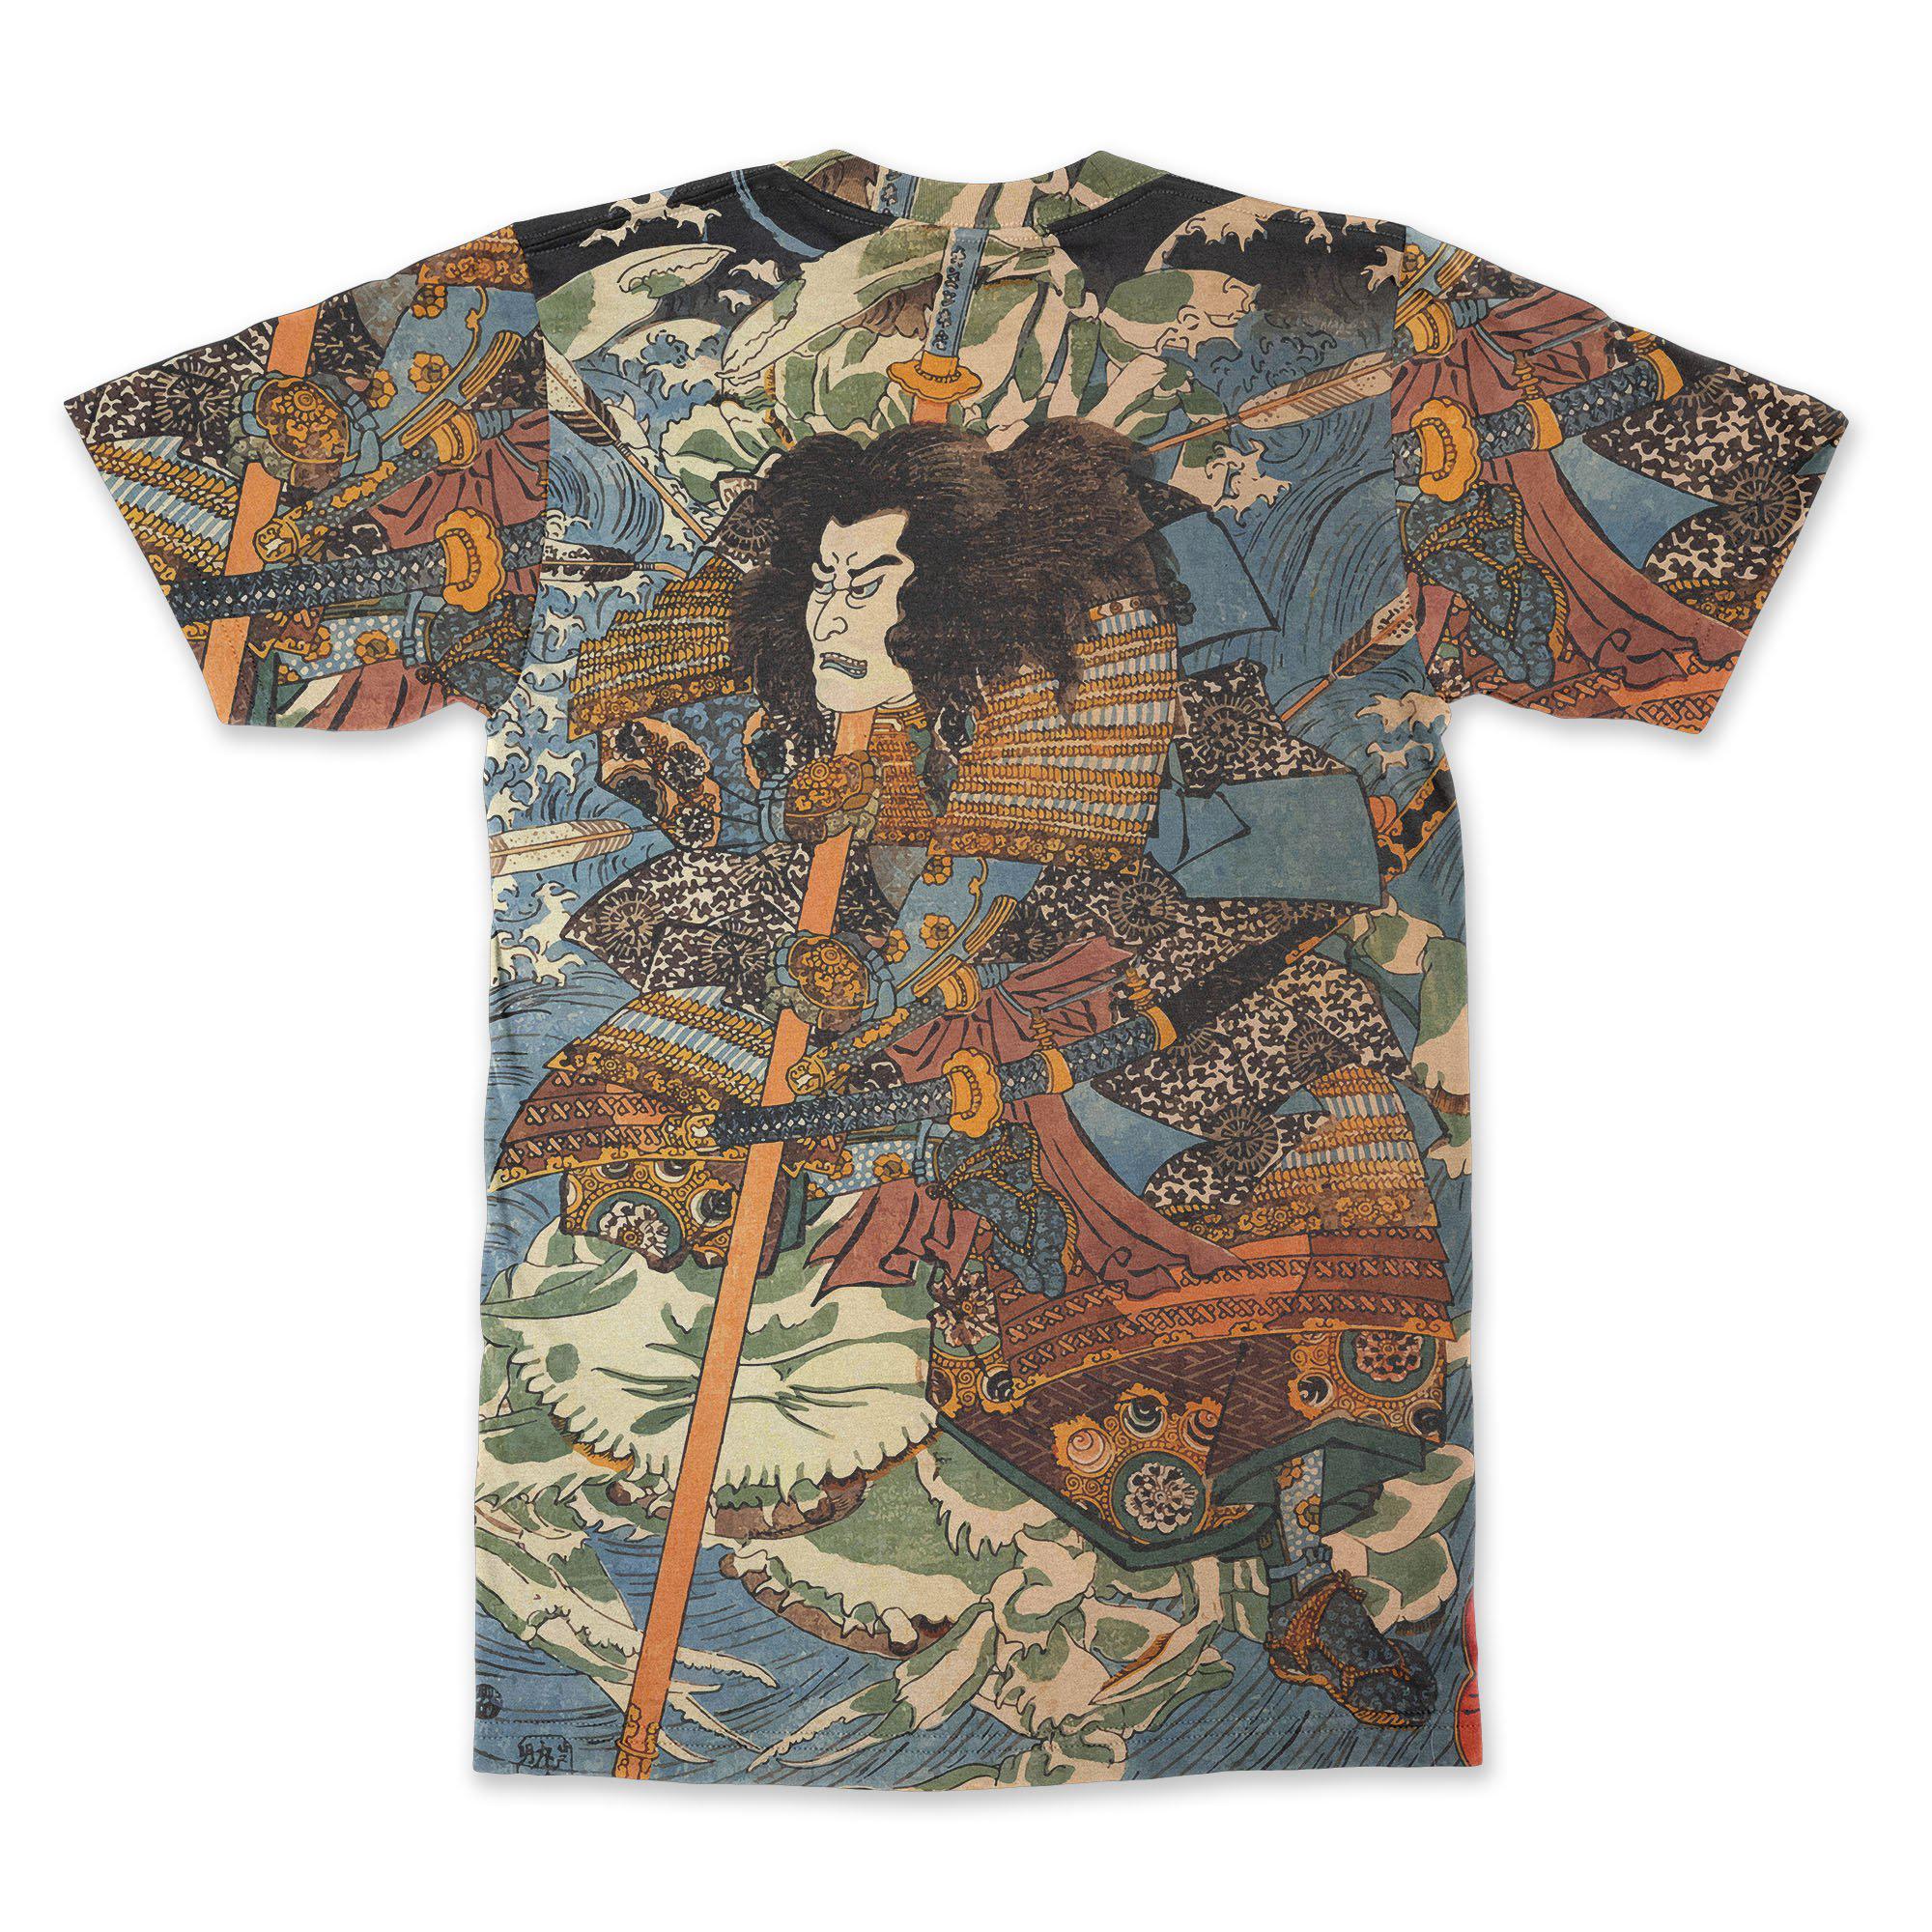 AOP T-Shirt XS Shimamura Takanori Riding The Waves T-Shirt